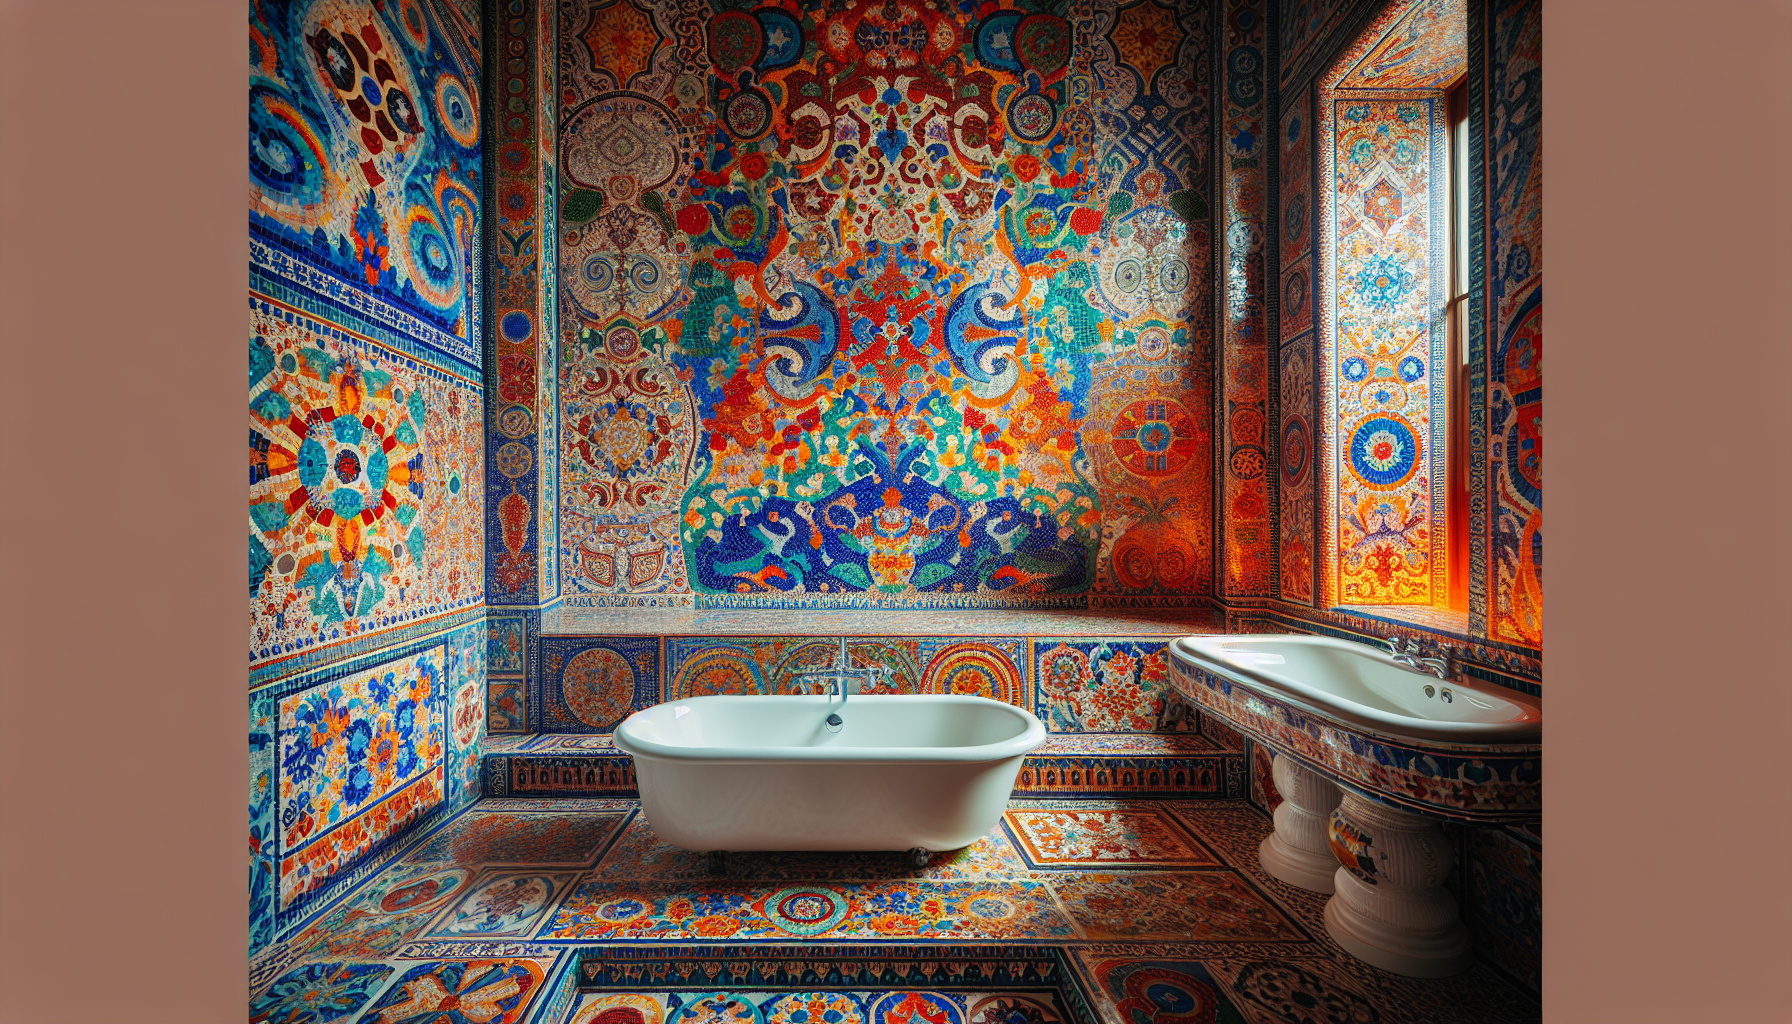 Mosaikfliesen als kreative Gestaltungselemente im Badezimmer